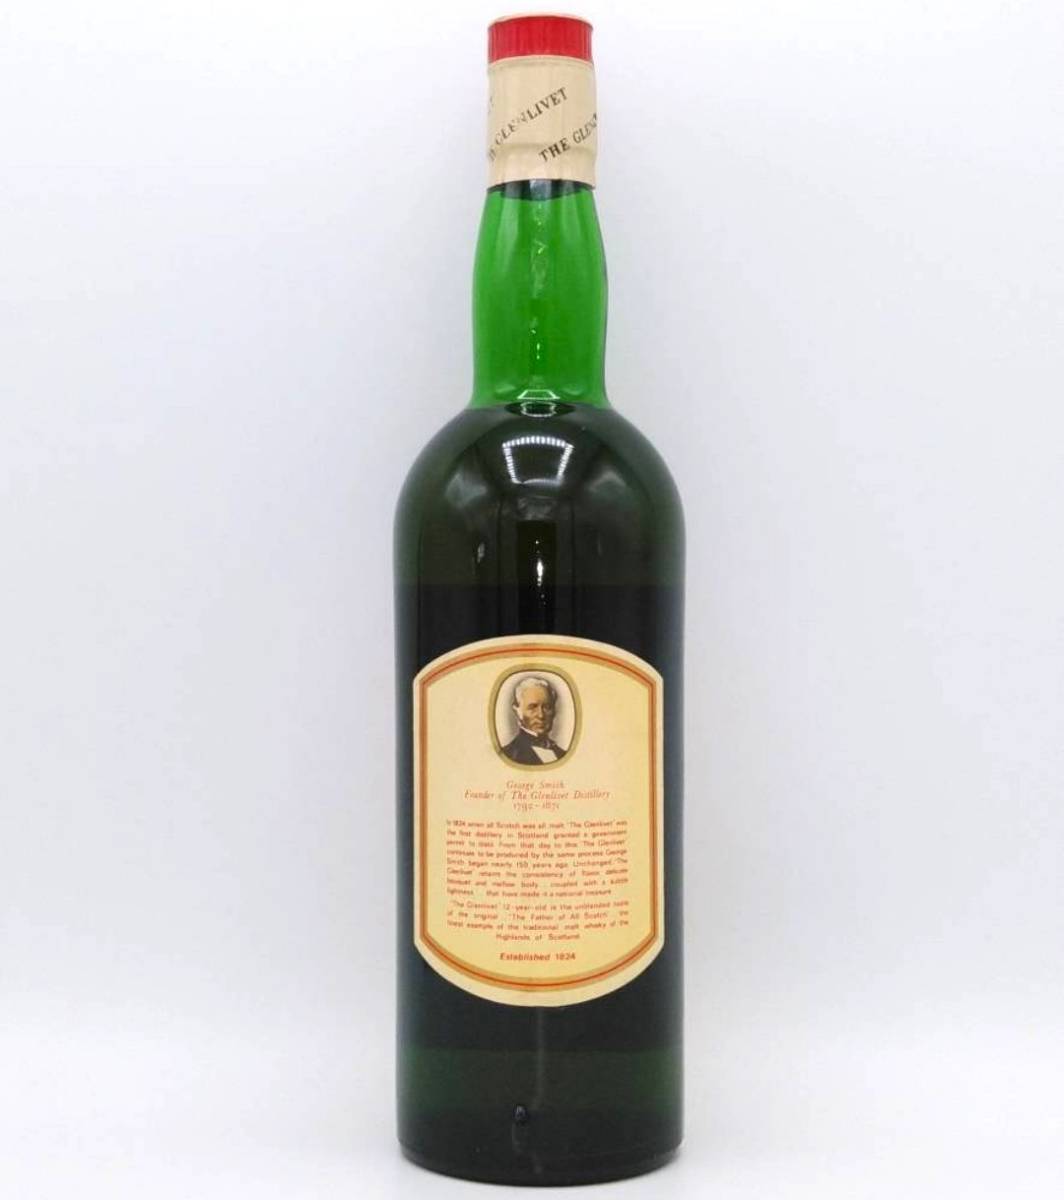 【全国送料無料】The GLENLIVET 12years old Unblended all malt Scotch Whisky【GEORGE&J.G.SMITH グレンリベット12年 アンブレンデッド】_画像3